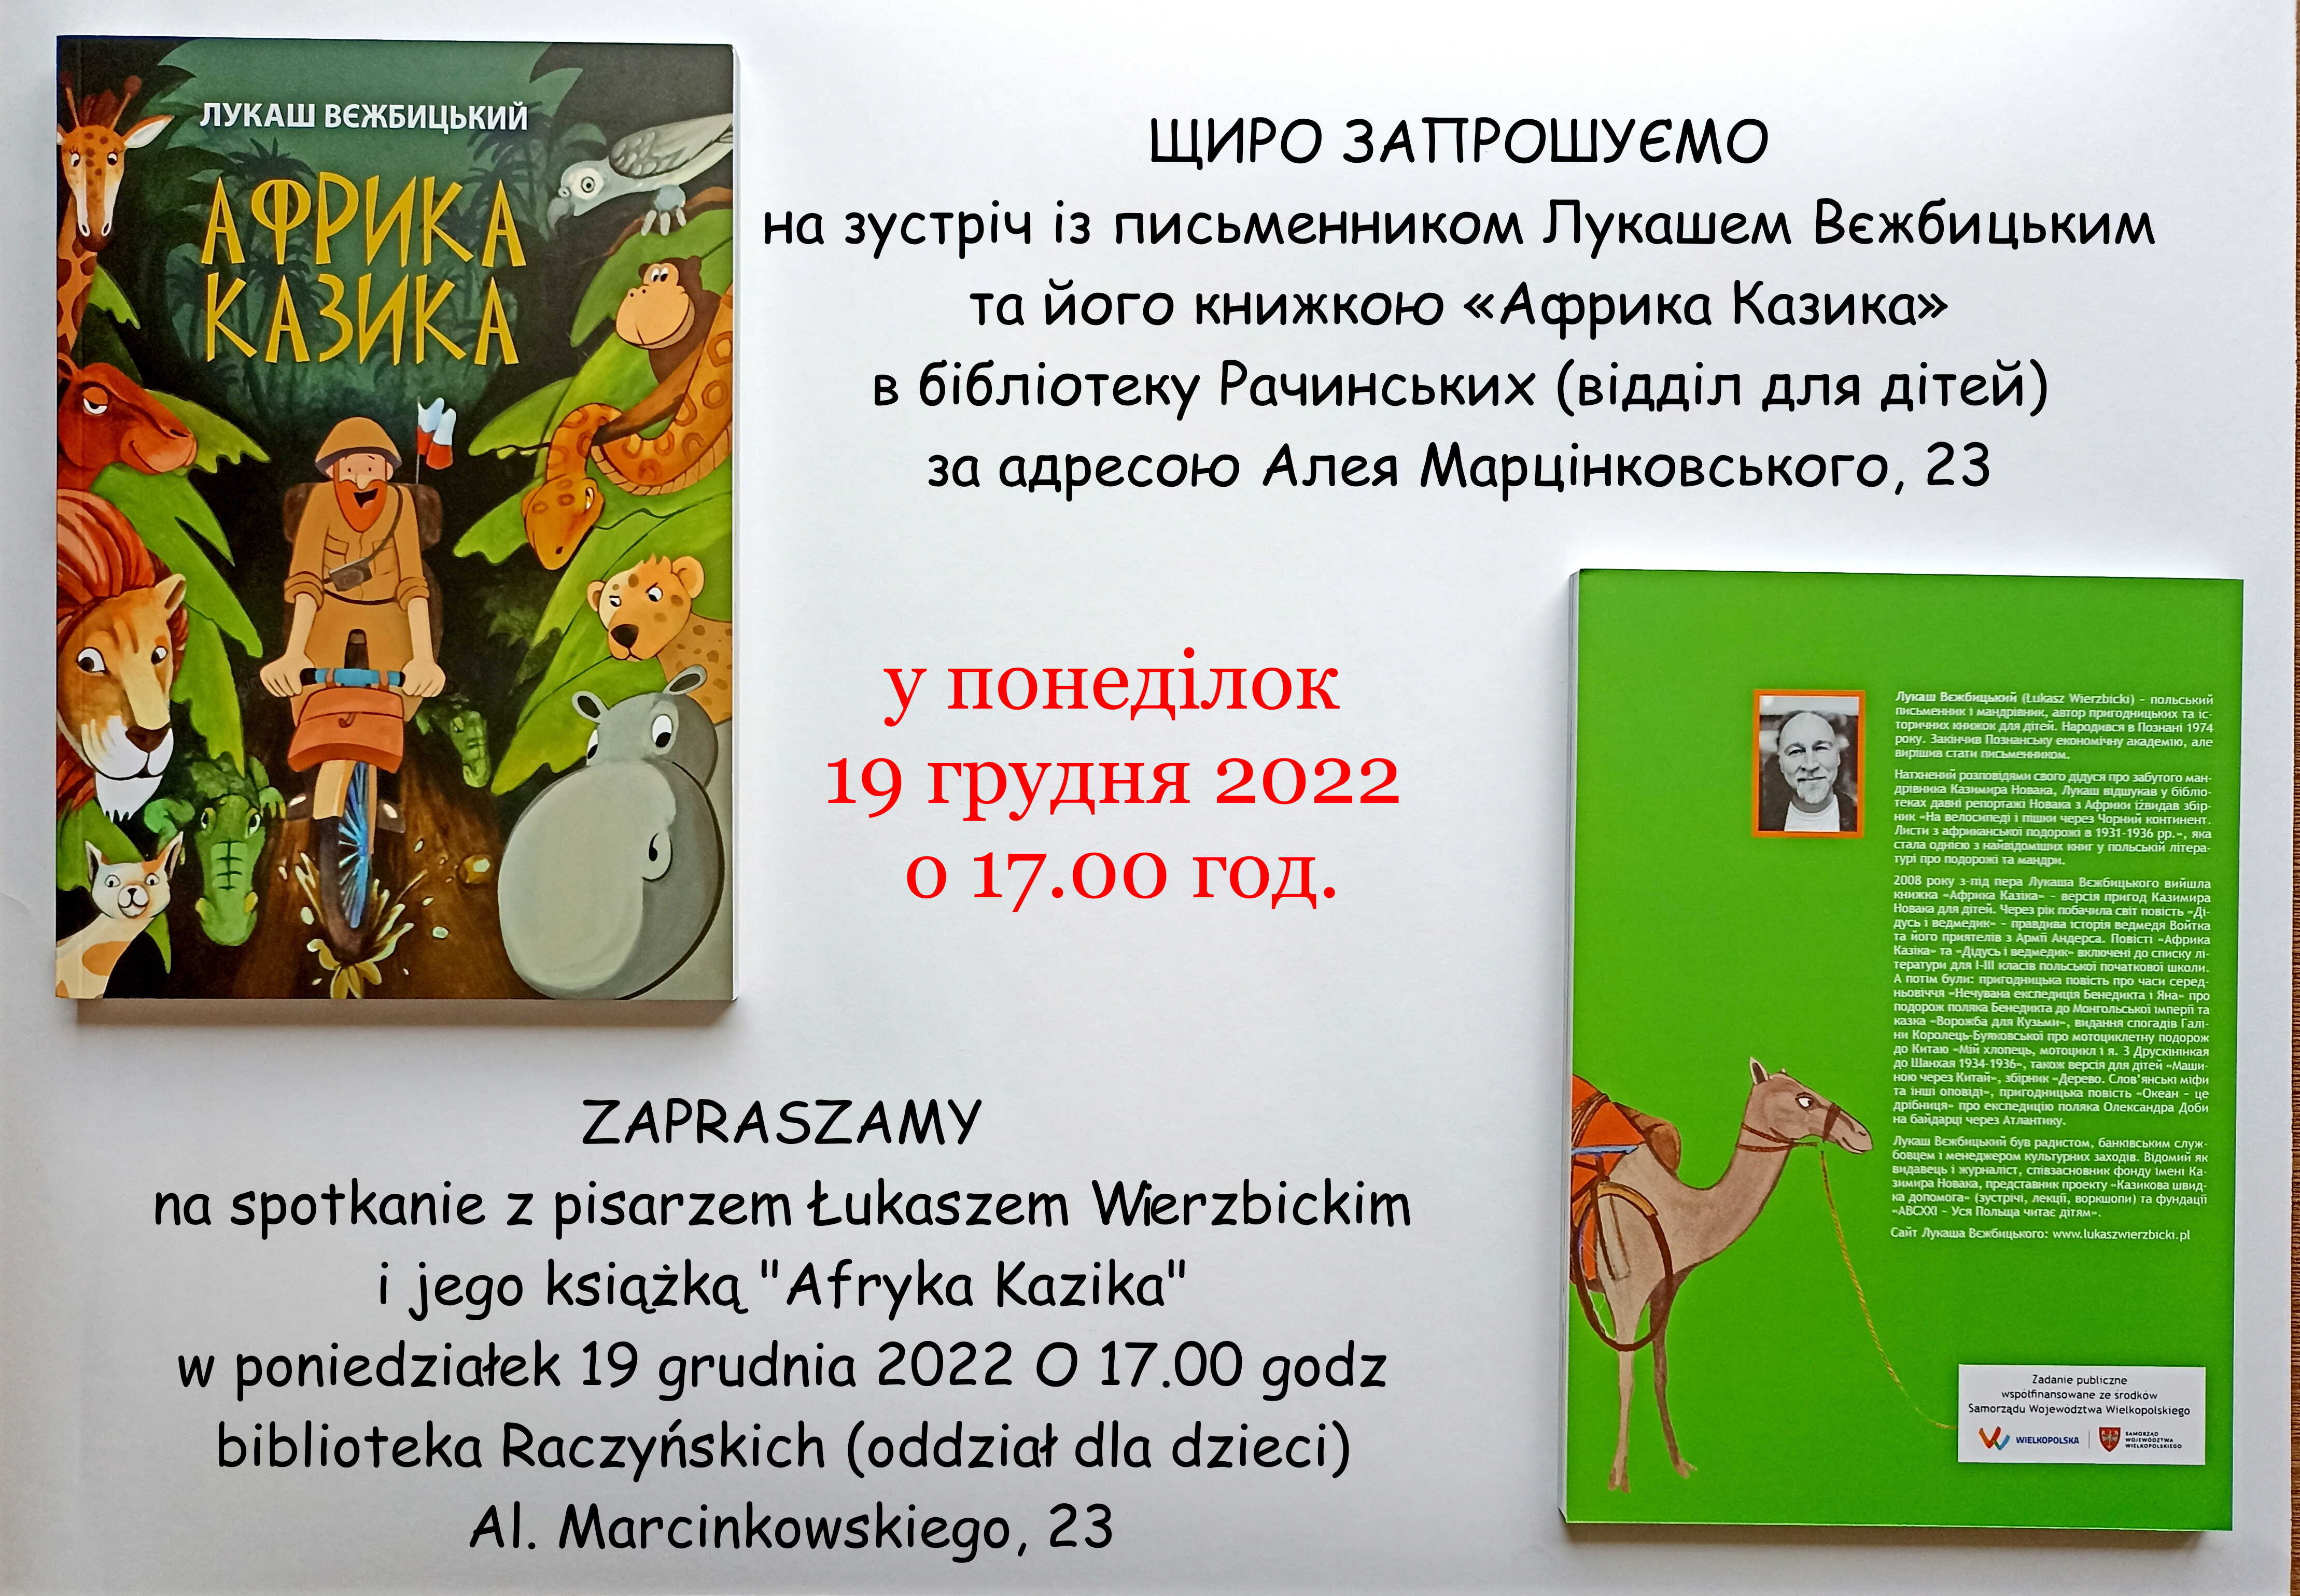 plakat informujący o spotkaniu, na nim rysunkowa okładka książki "Afryka Kazika" z brodatym mężczyzną na rowerze i głowami zwierząt lew, żyrafa, hipopotam. Tytuł zapisany po ukraińsku.